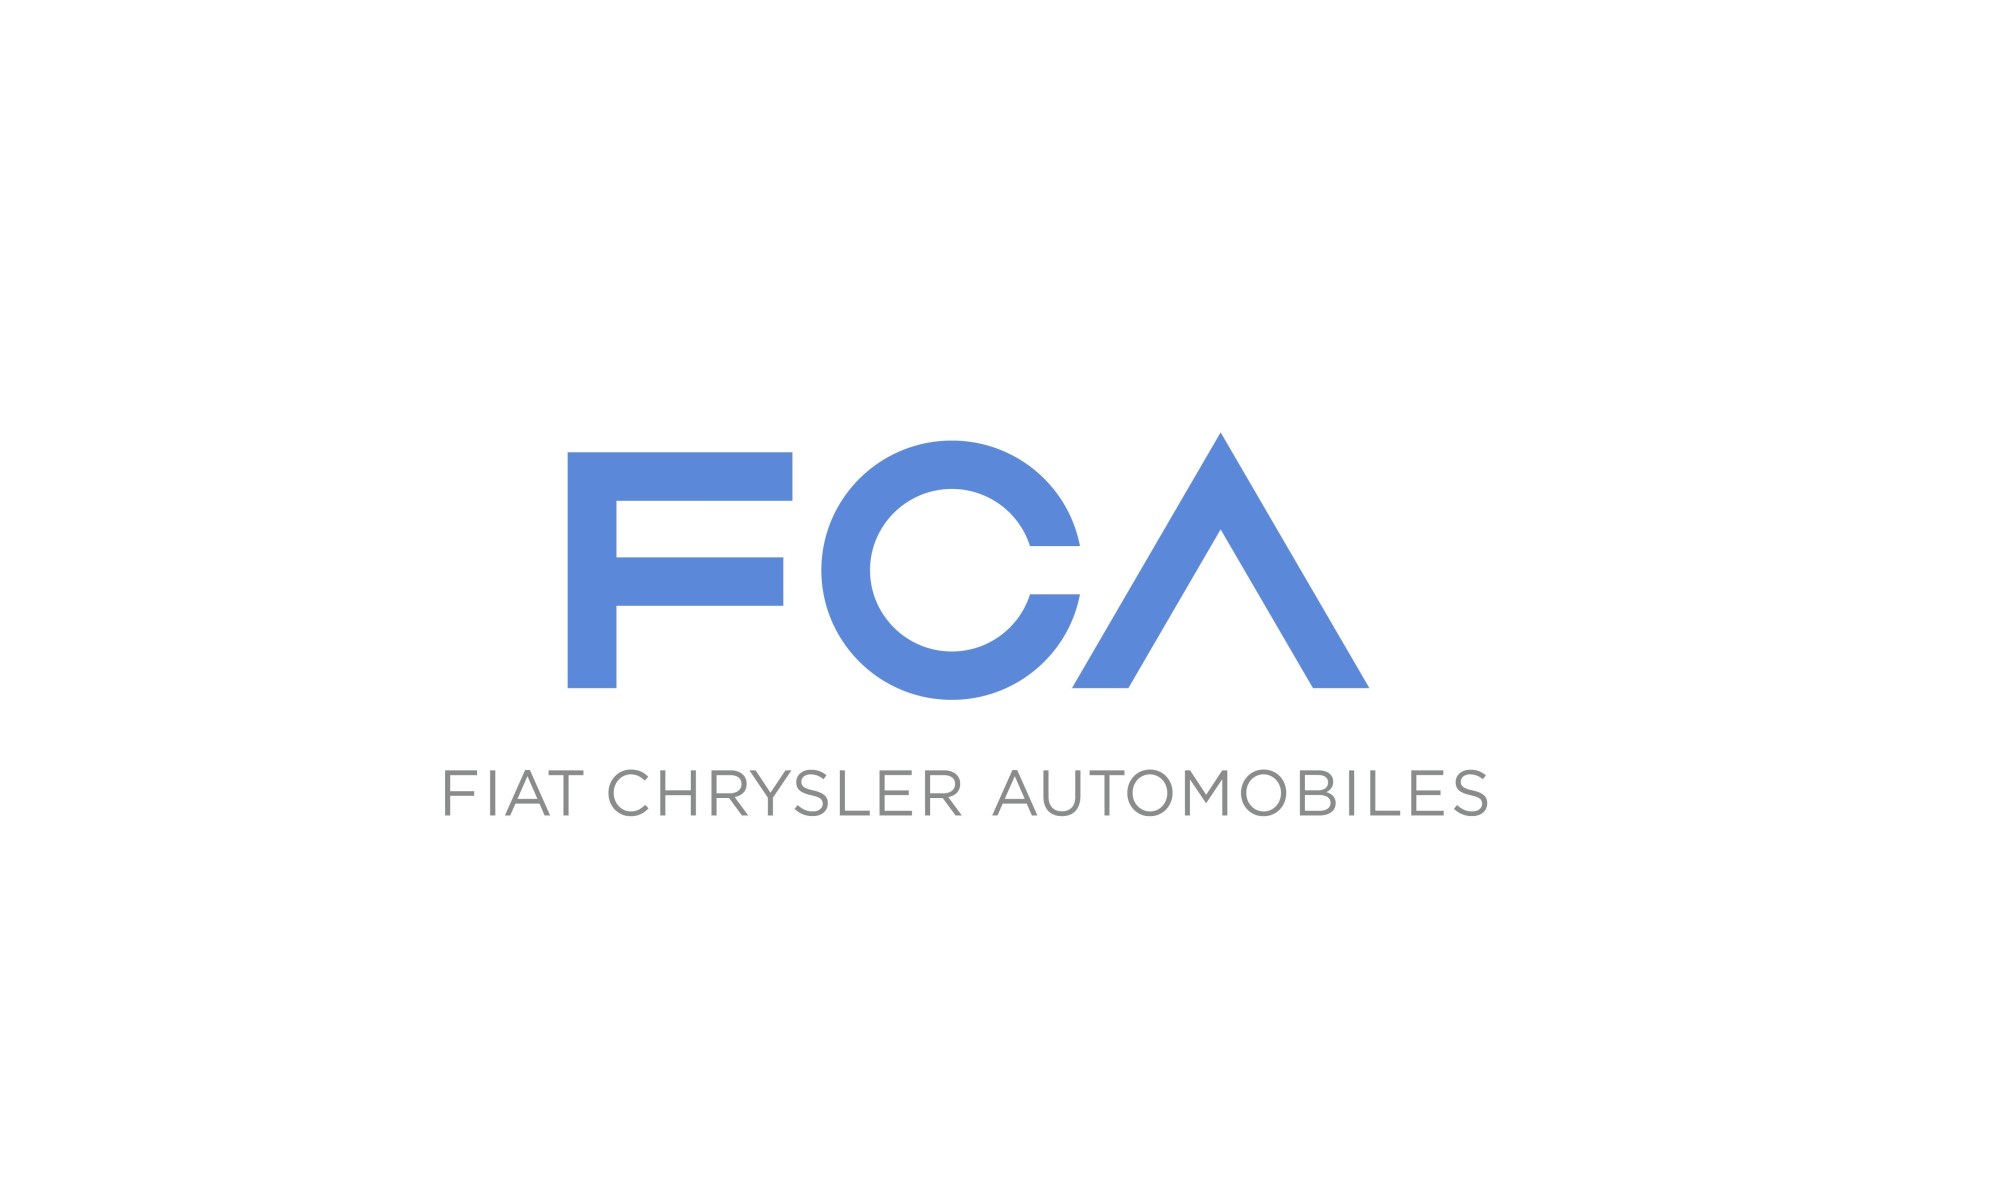 Fiat Chrysler Automobiles wählt Mobilfunkanbieter Transatel als Partner in Europa für die Konnektivität von Fahrzeugen